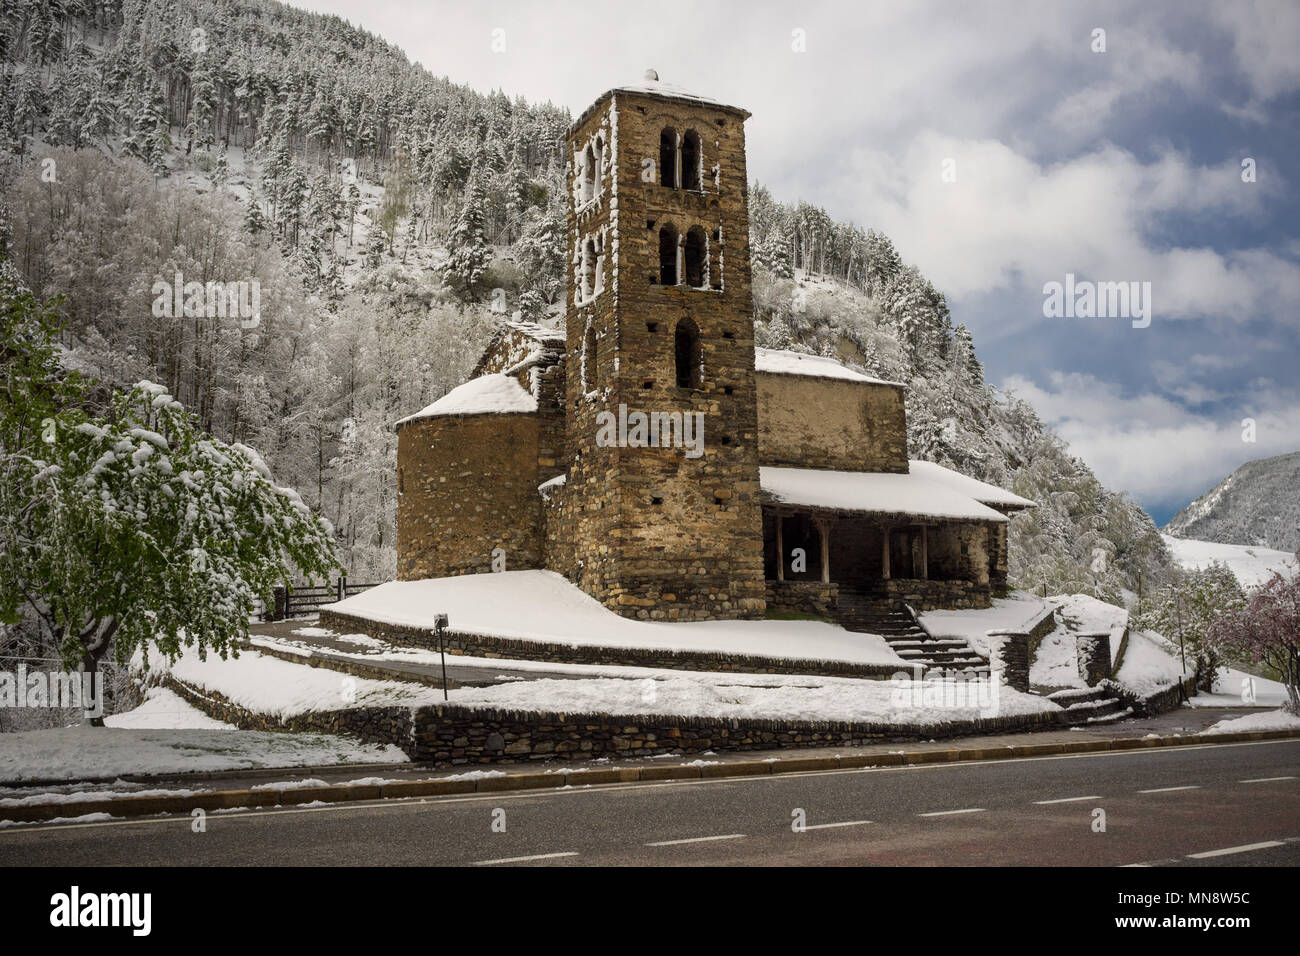 Església de Sant Joan de caselles, una iglesia ubicada en Canillo, Andorra. Se trata de un patrimonio propiedad inscrita en el Patrimonio Cultural de Andorra Foto de stock